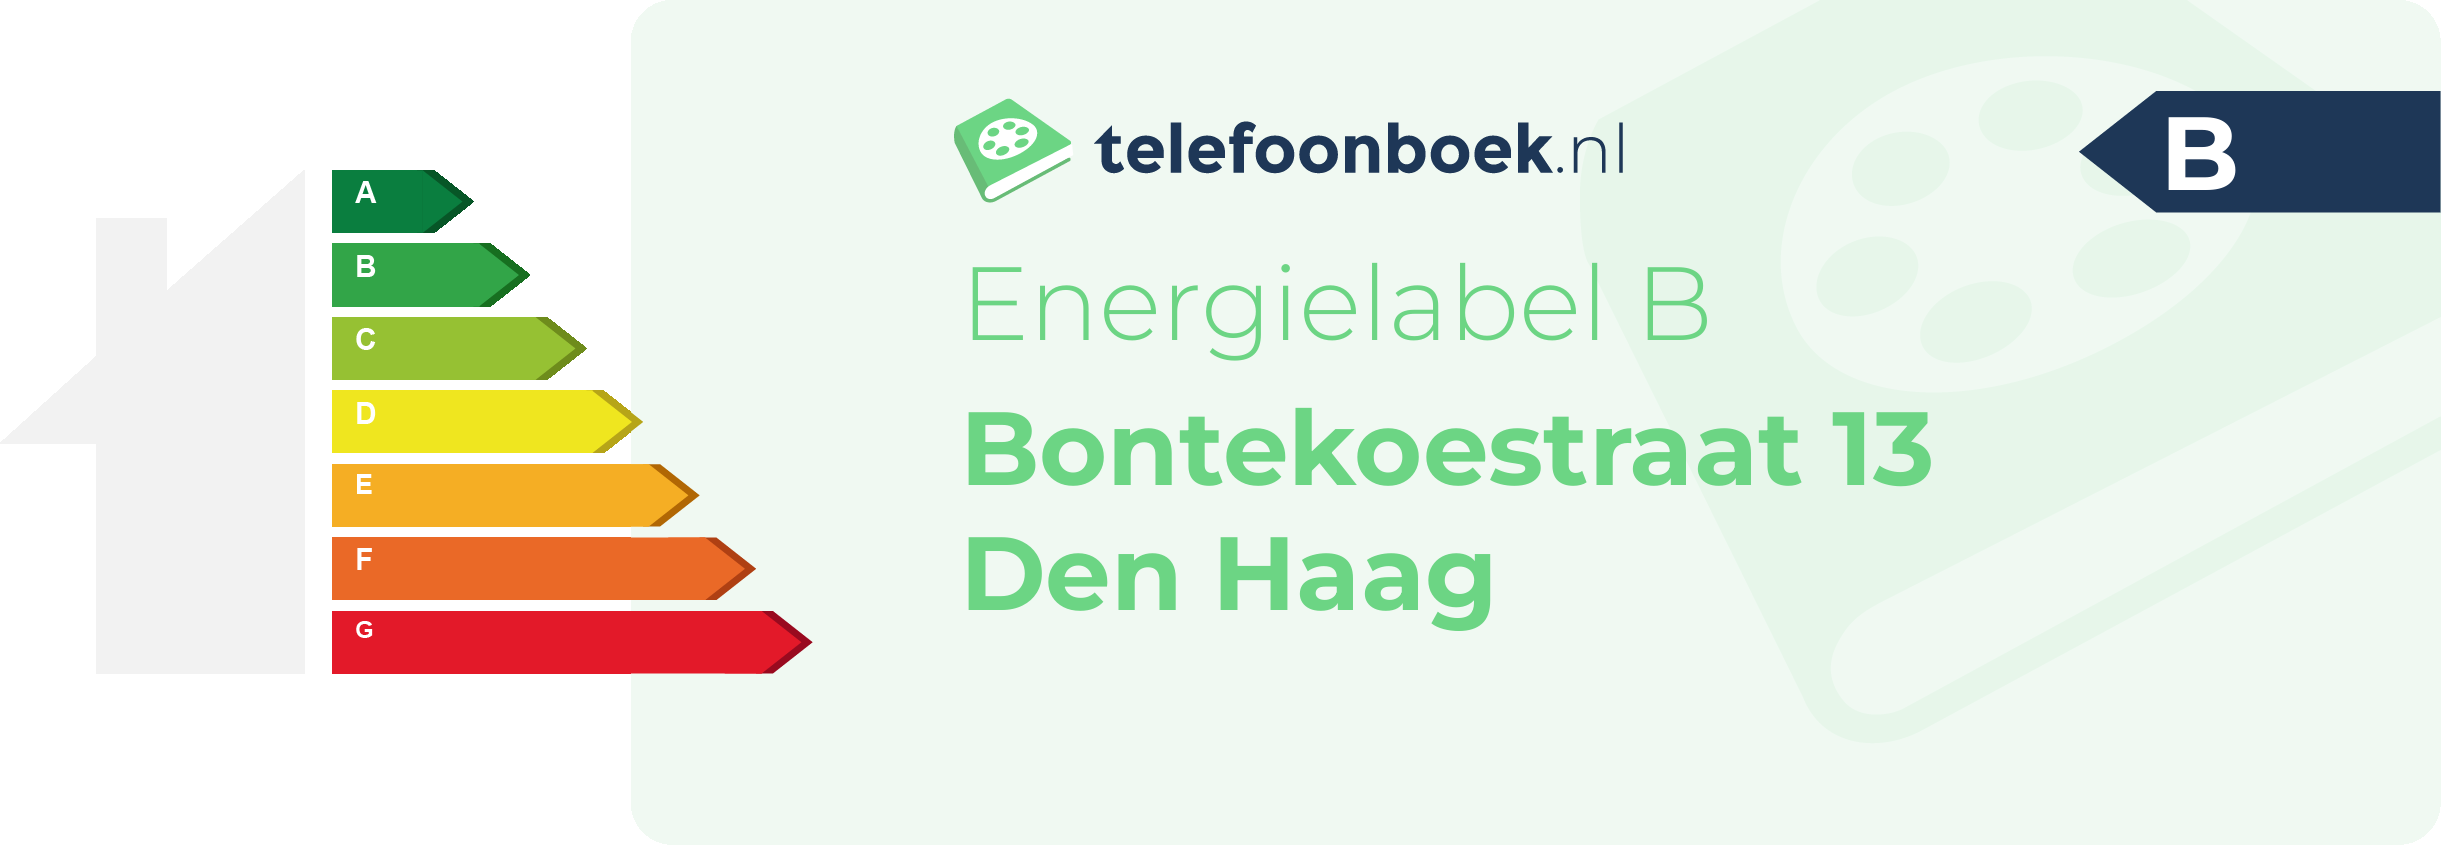 Energielabel Bontekoestraat 13 Den Haag